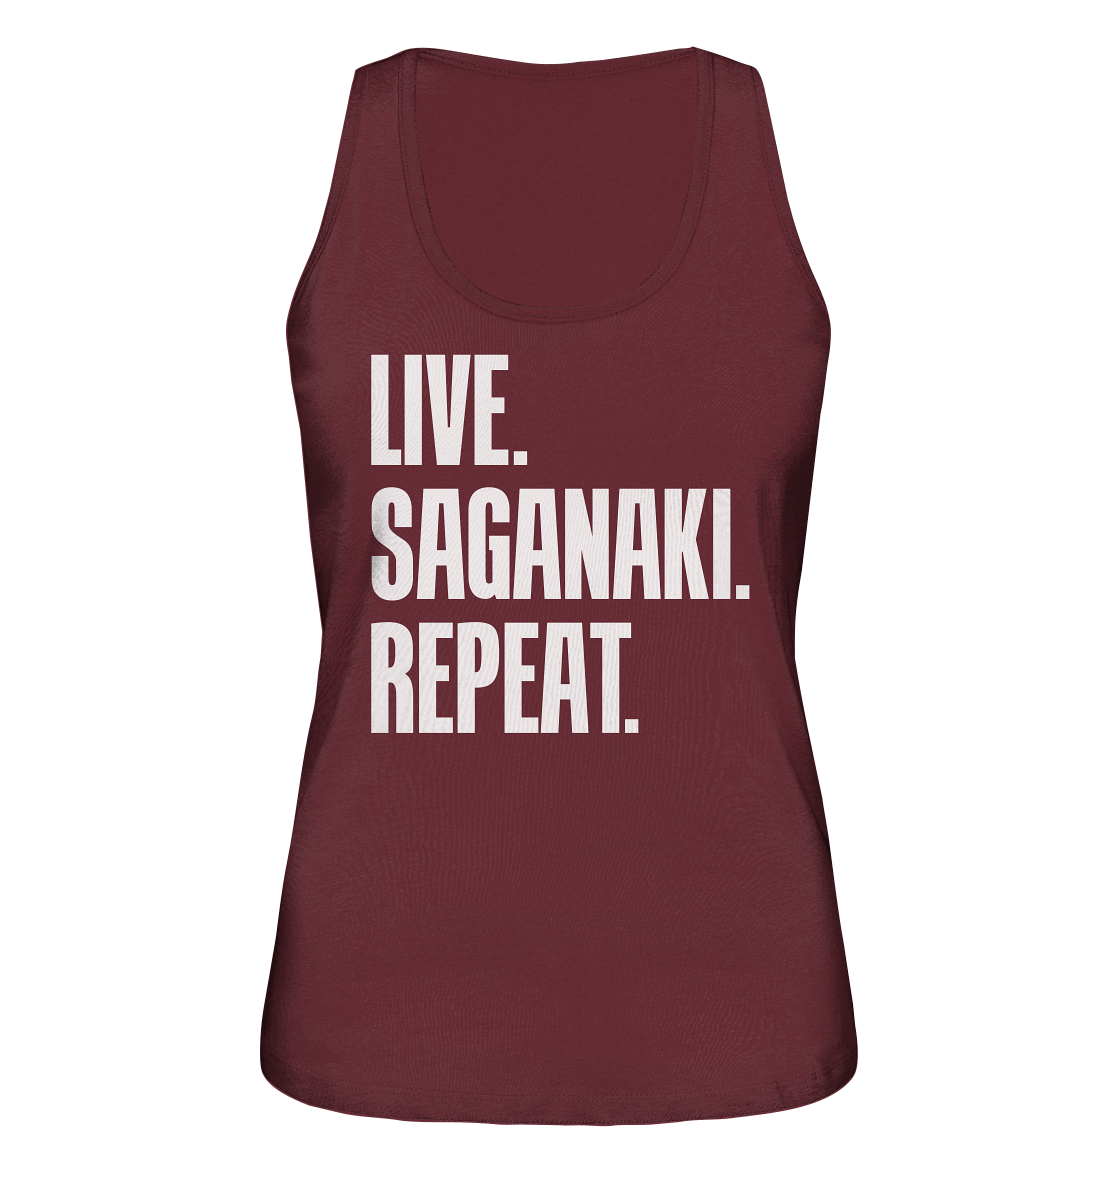 LIVE. SAGANAKI. REPEAT. - Ladies Organic Tank-Top